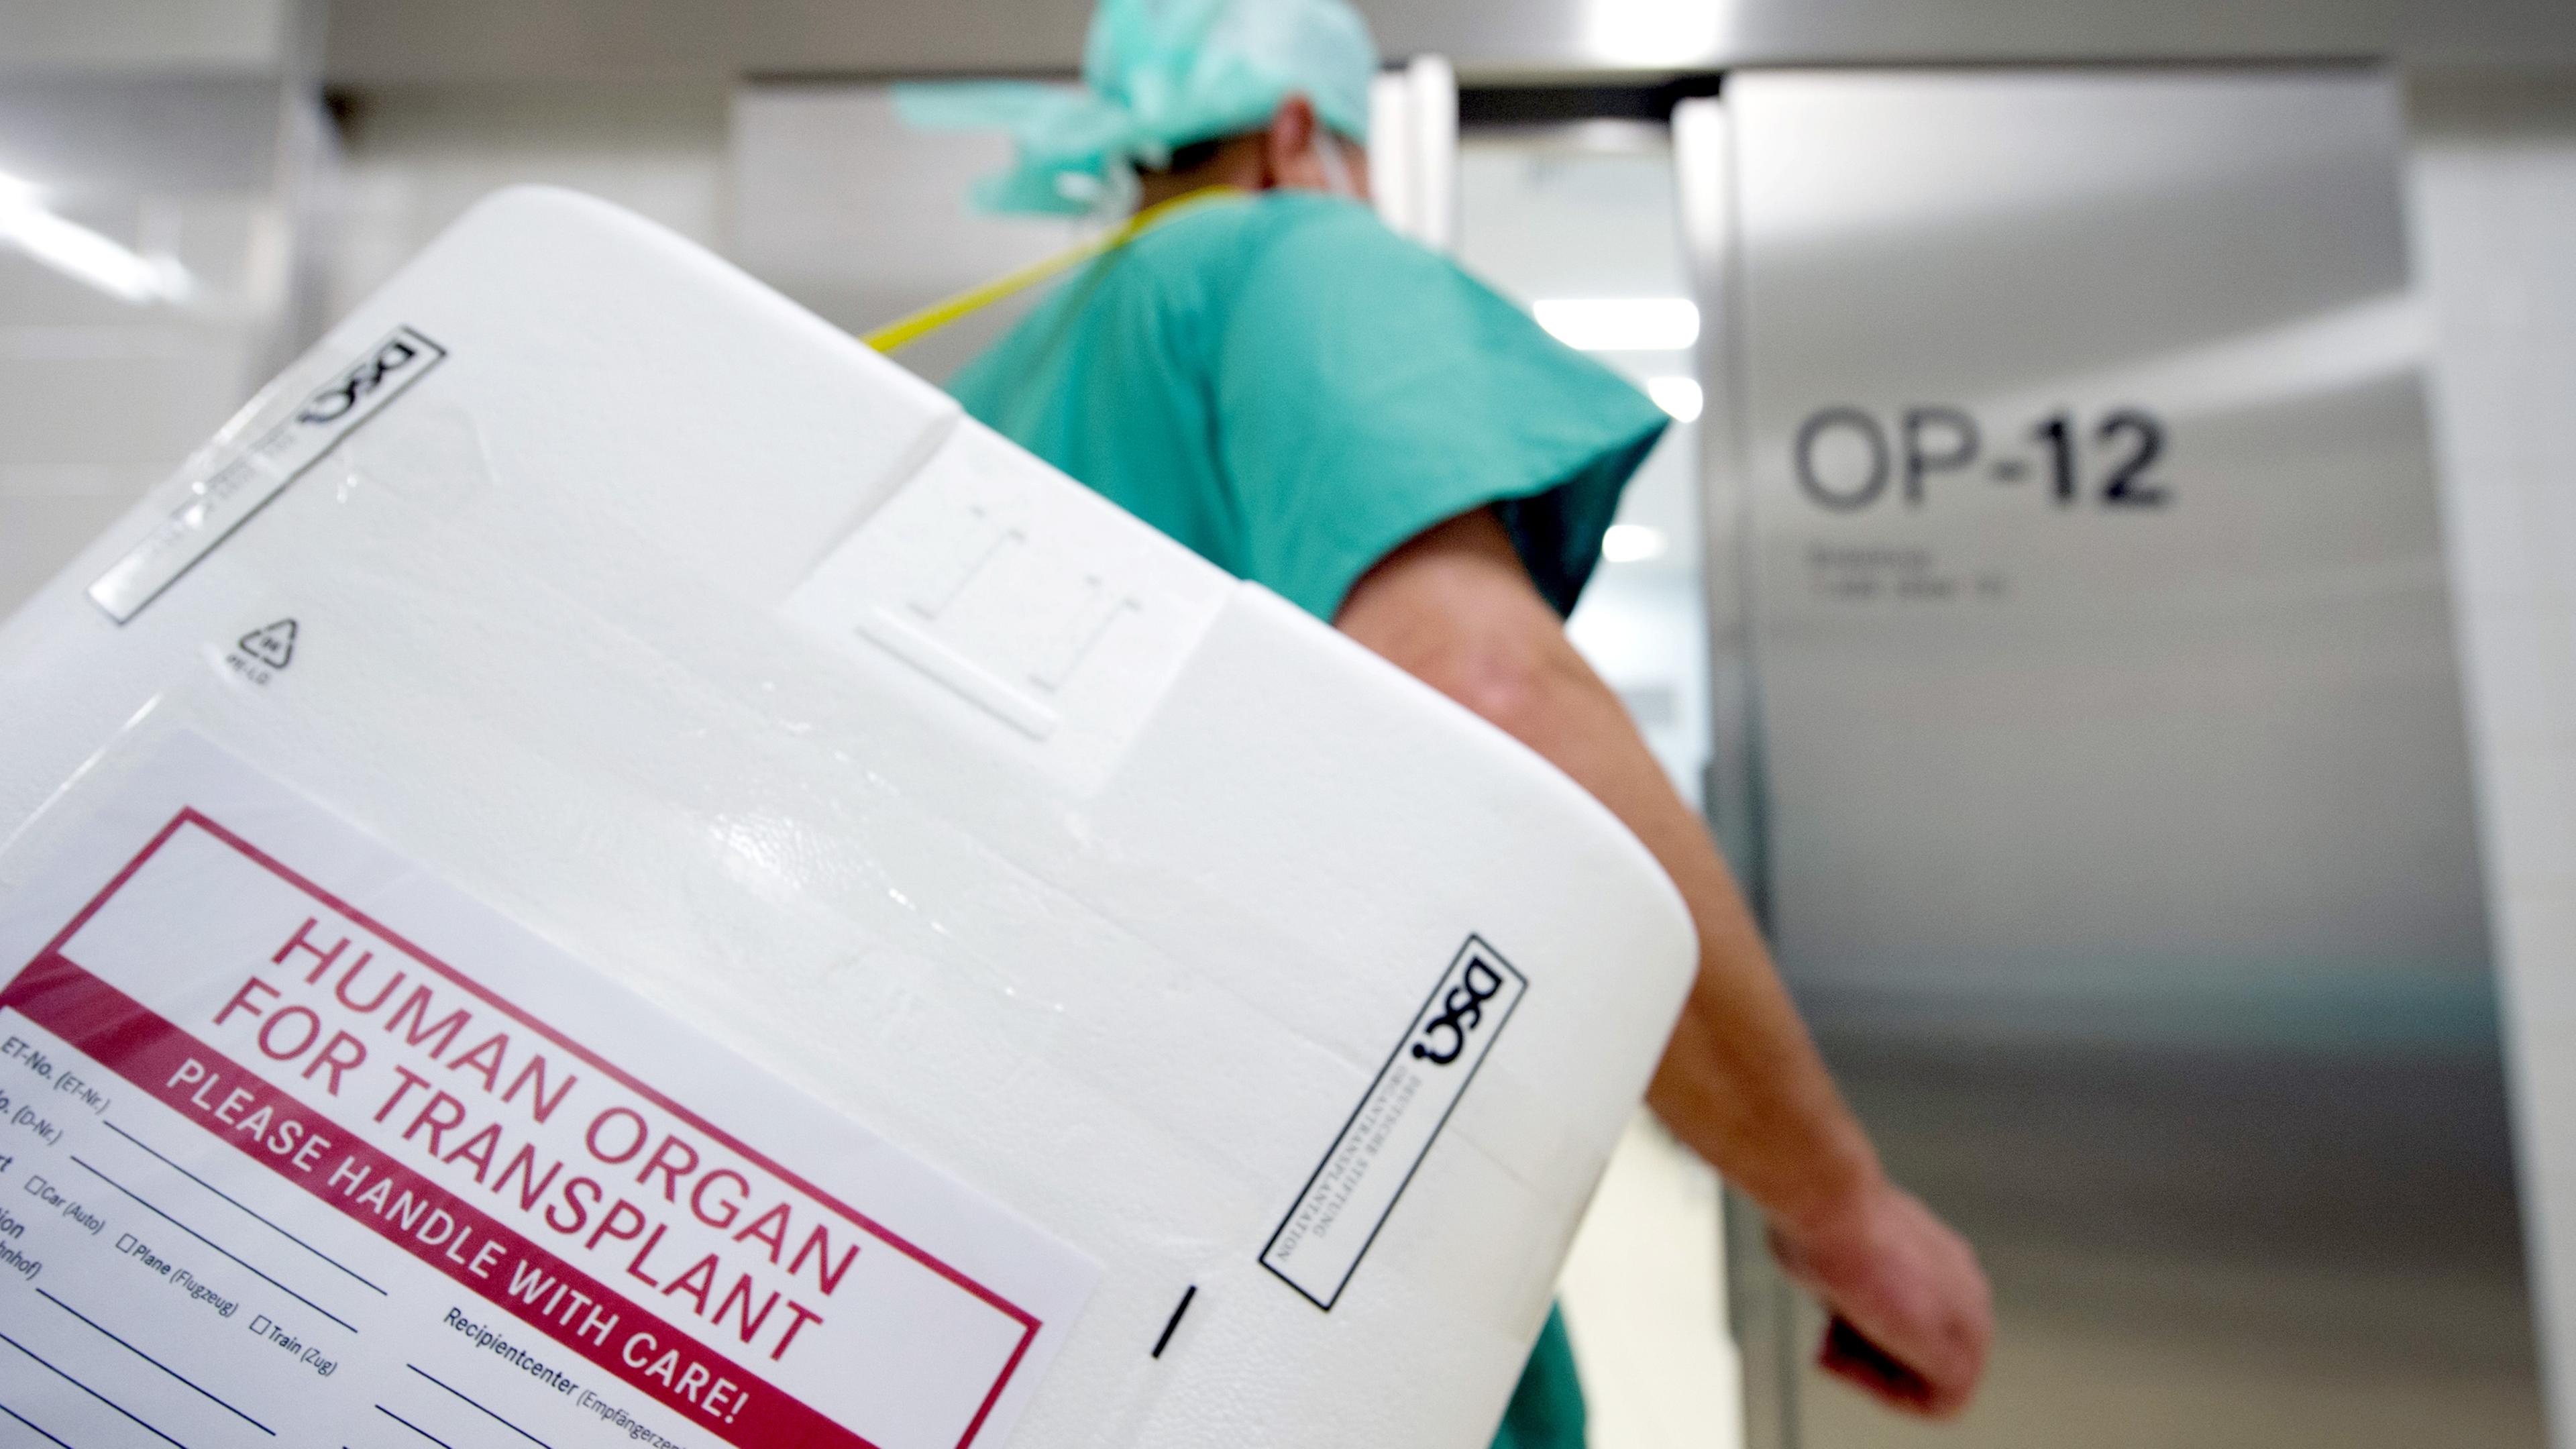 Archiv: Ein Styropor-Behälter zum Transport von zur Transplantation vorgesehenen Organen wird am Eingang eines OP-Saales vorbeigetragen.